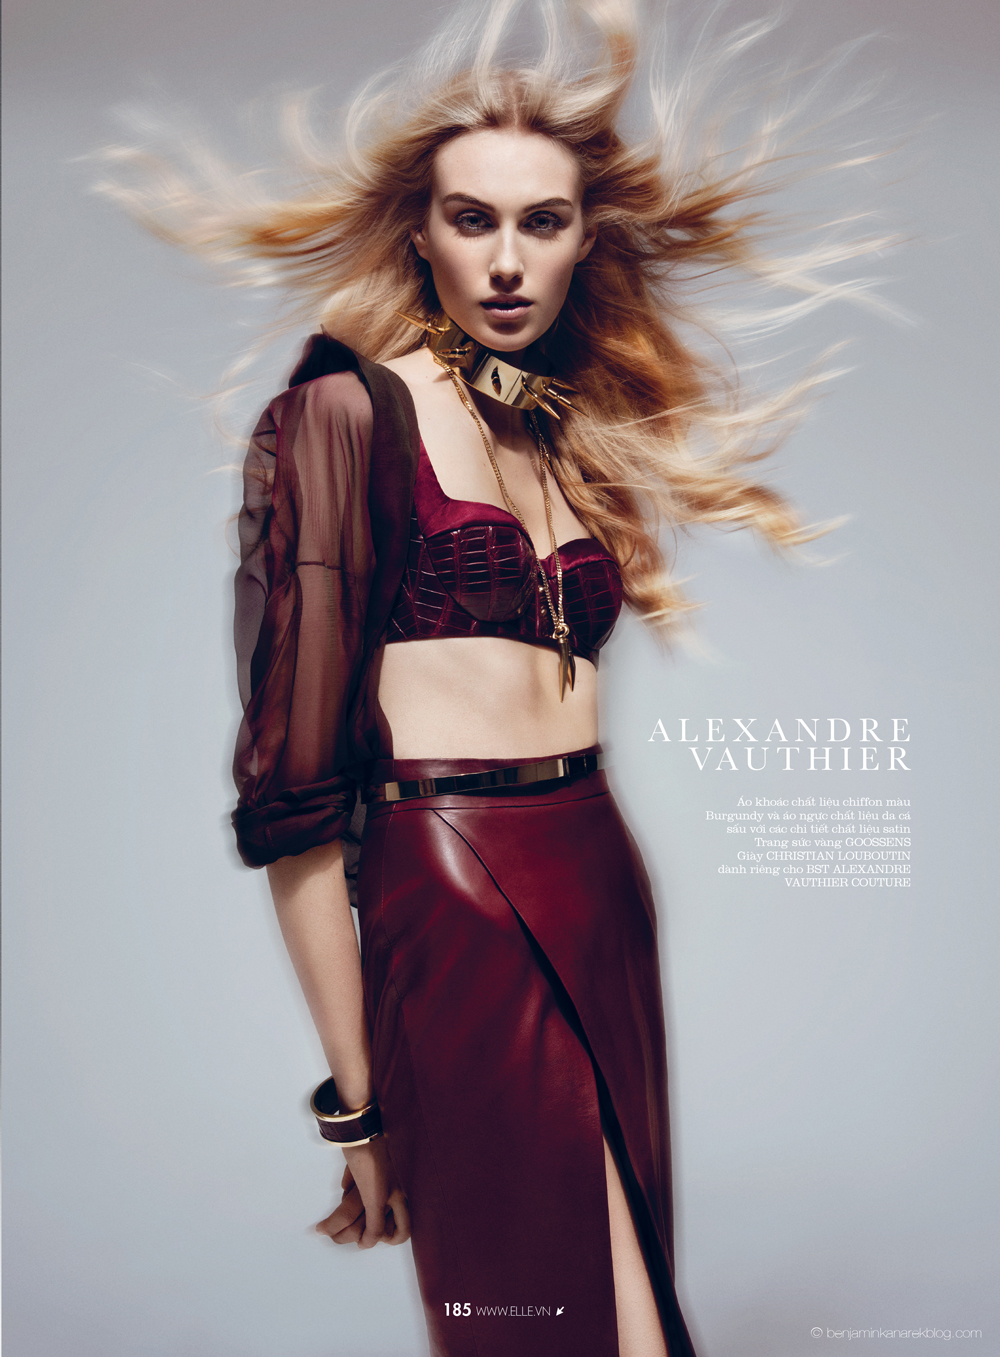 Dauphine McKee in Alexandre Vauthier Haute Couture © Benjamin Kanarek for ELLE Vietnam April 2014